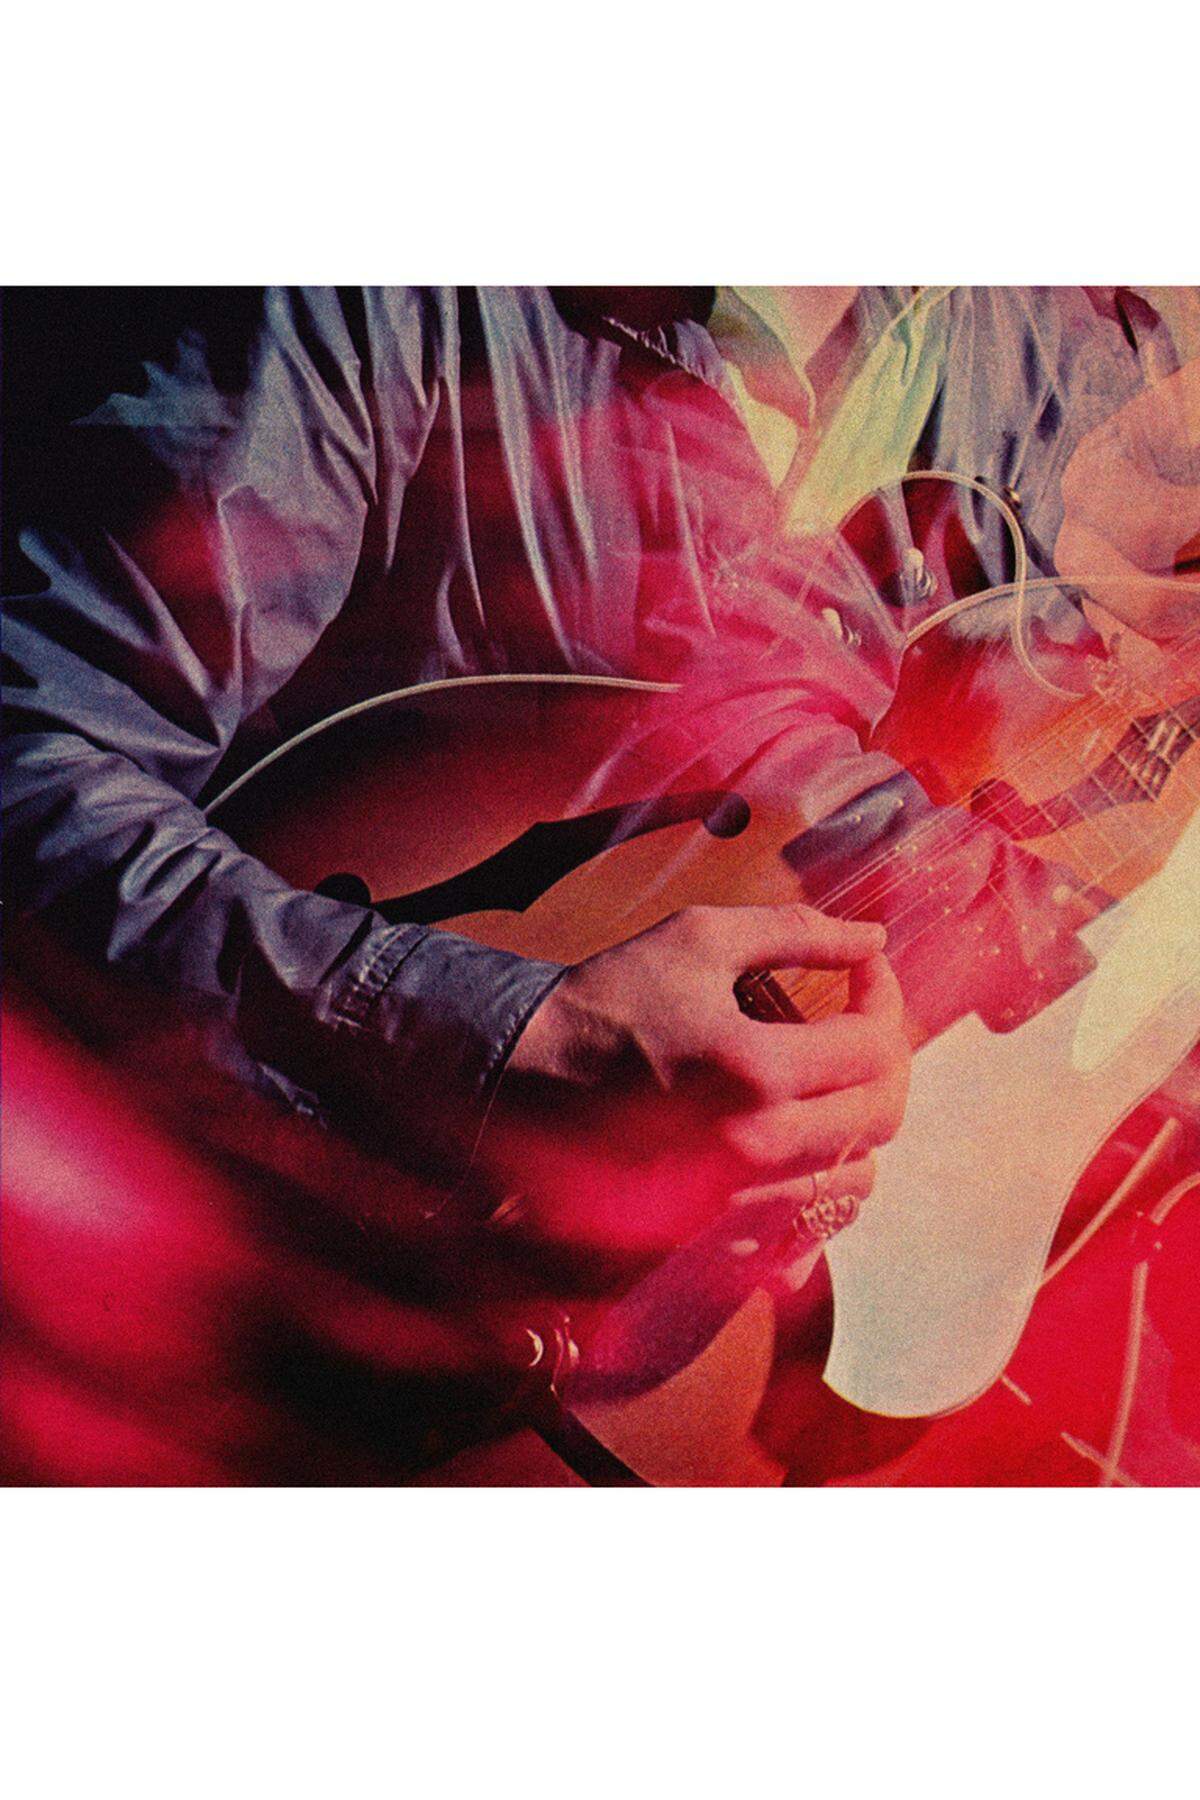 Ein Album, in das man sich verlieren kann, immer und immer wieder. "Kill For Love" perfektioniert nicht nur die bisherigen Stärken der Chromatics - retro-futuristische Synth-Disco voll Großstadtmelancholie und nachaktiven Pop-Noir -, sondern führte auch in bisweilen euphorische Höhen. Nicht zu vergessen: die fantastische Coverversion von Neil Youngs "Hey Hey, My My". Link zur Kritik: Chromatics "Kill For Love". Hörprobe: 